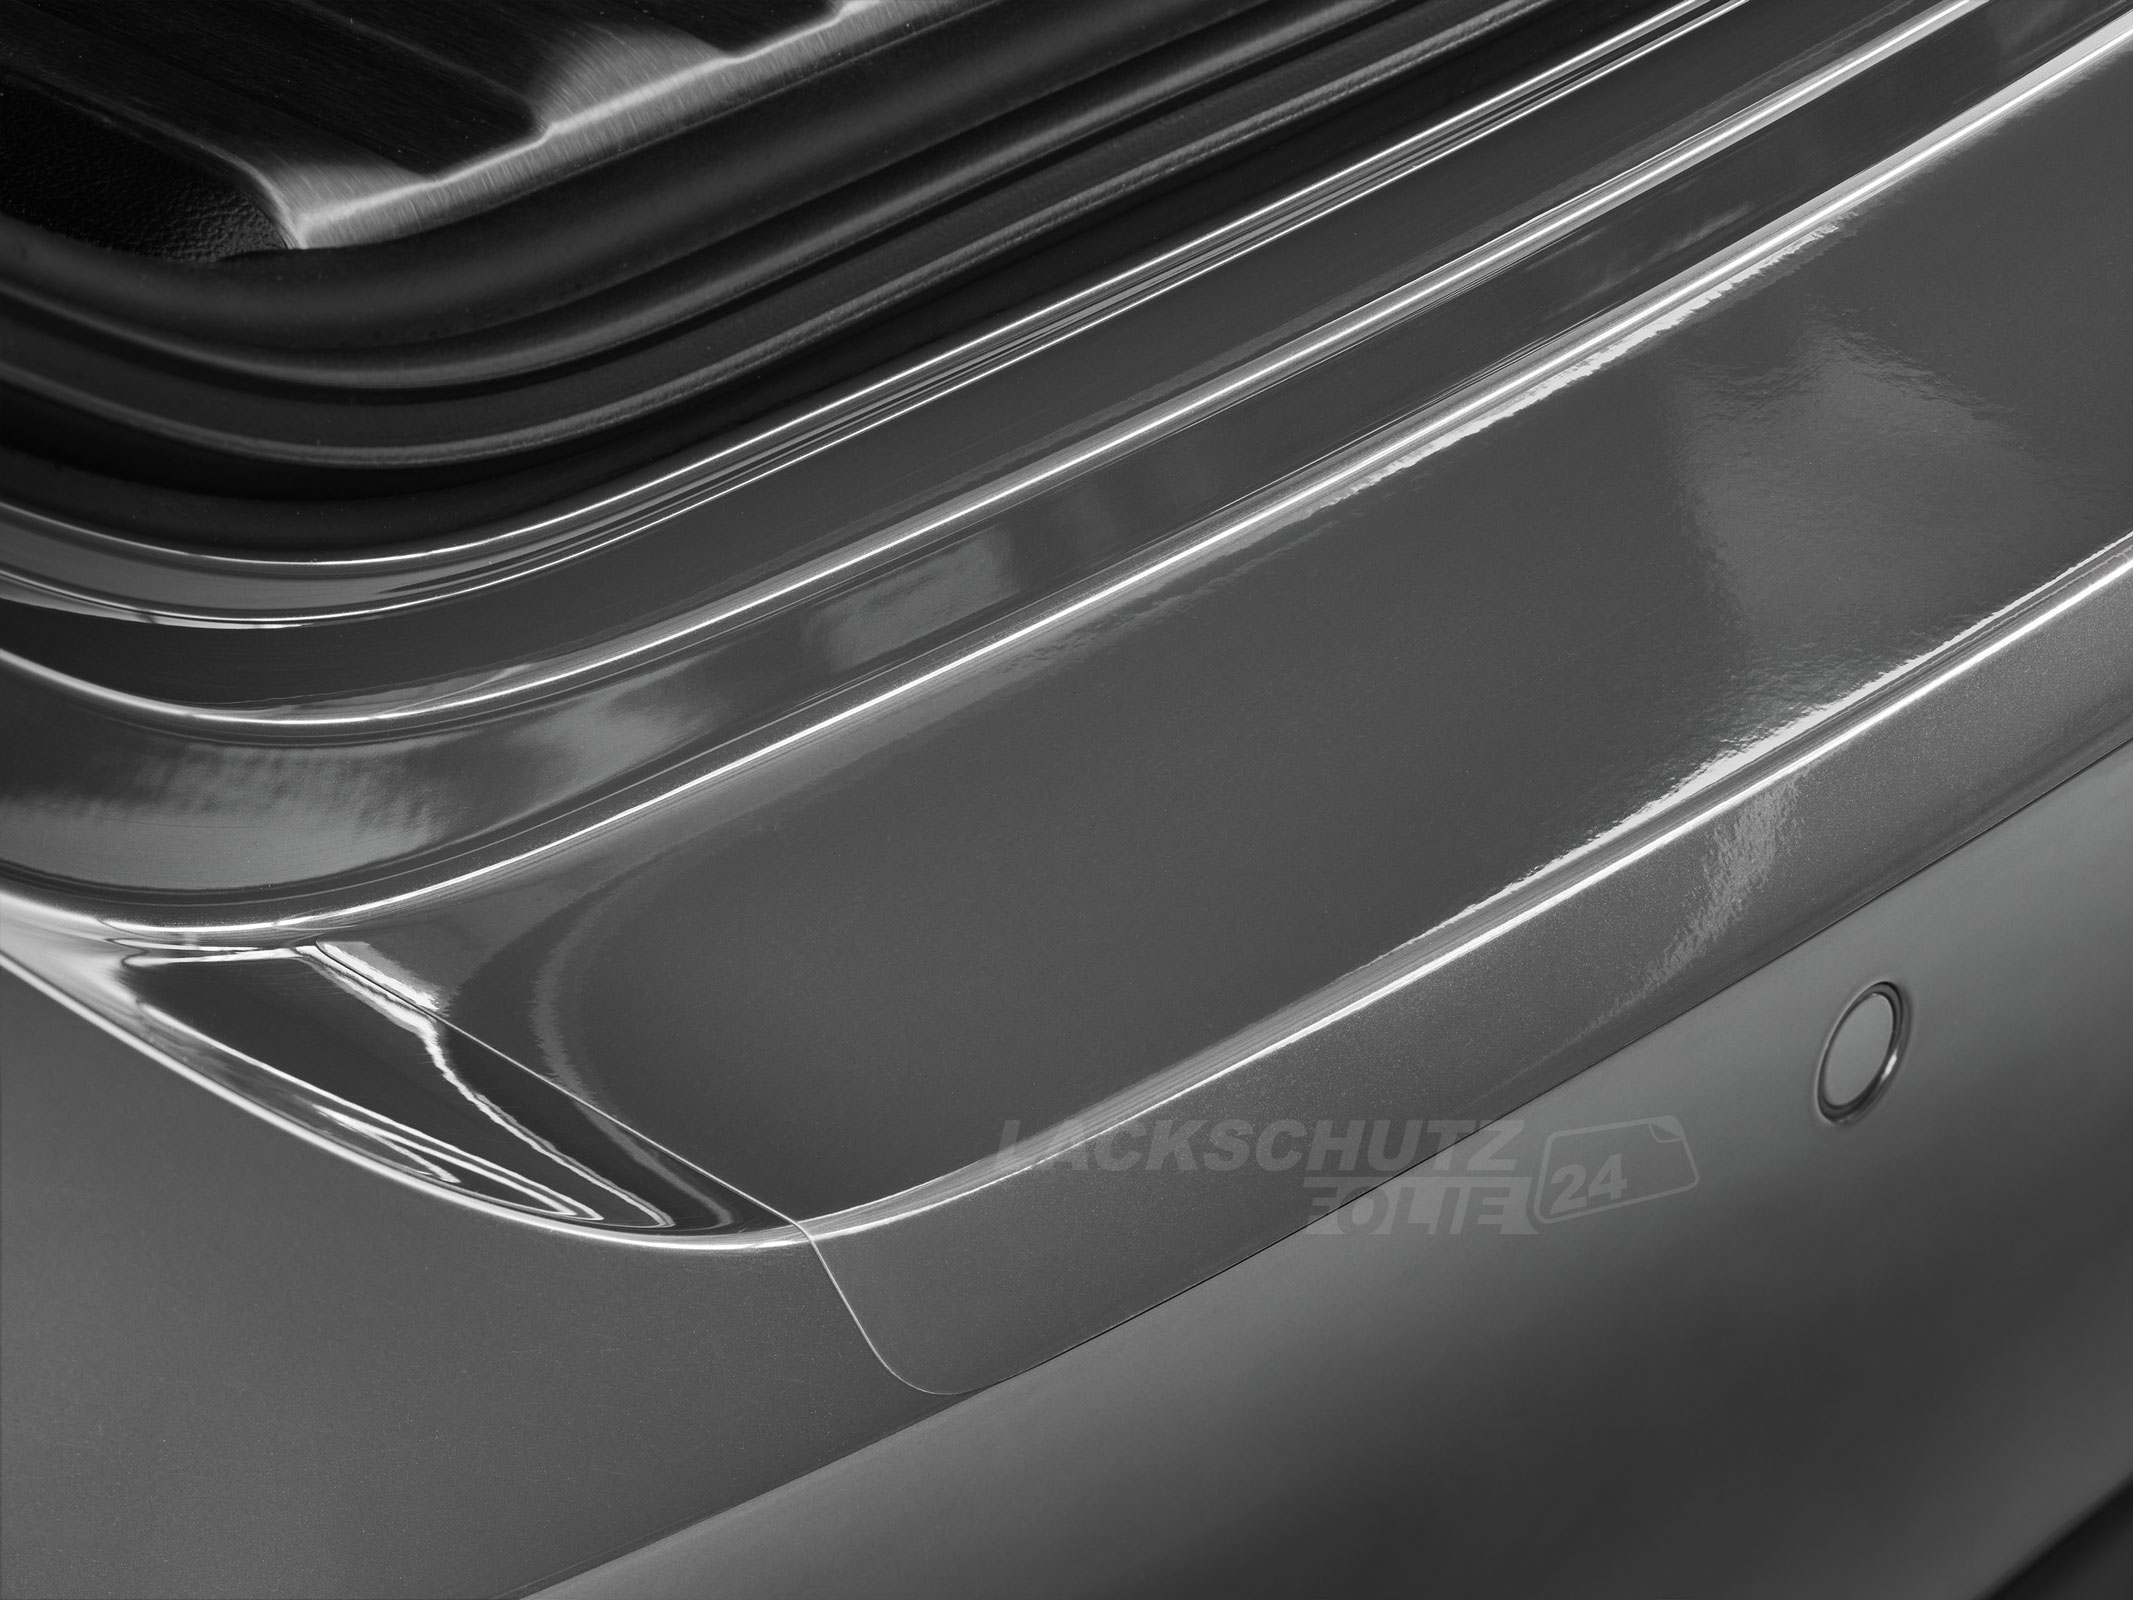 Ladekantenschutzfolie - Transparent Glatt Hochglänzend für BMW 1er  Typ F20 / F21, ab BJ 09/2011-01/2015